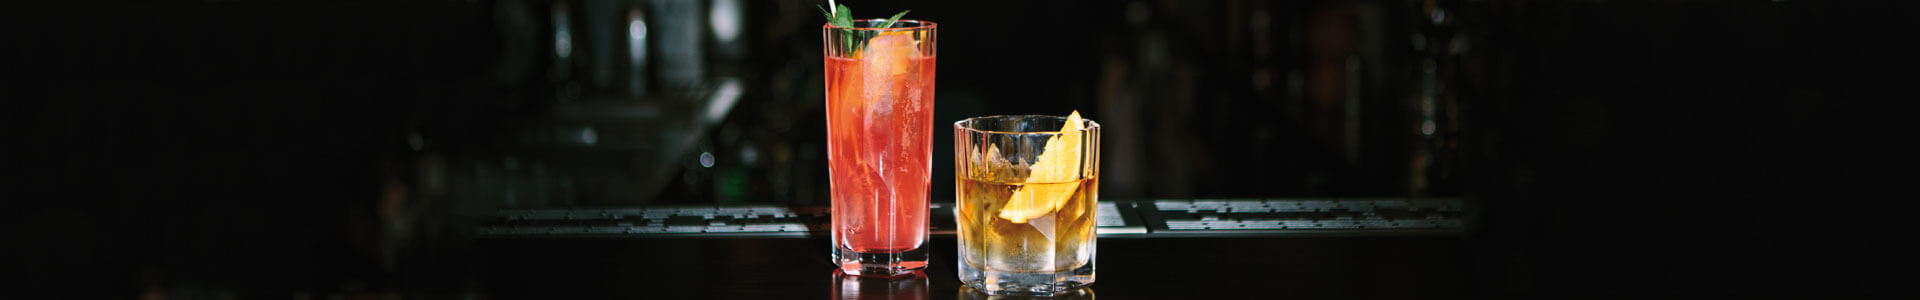 Zwei Gläser aus der Aspen-Serie mit Cocktails gefüllt.